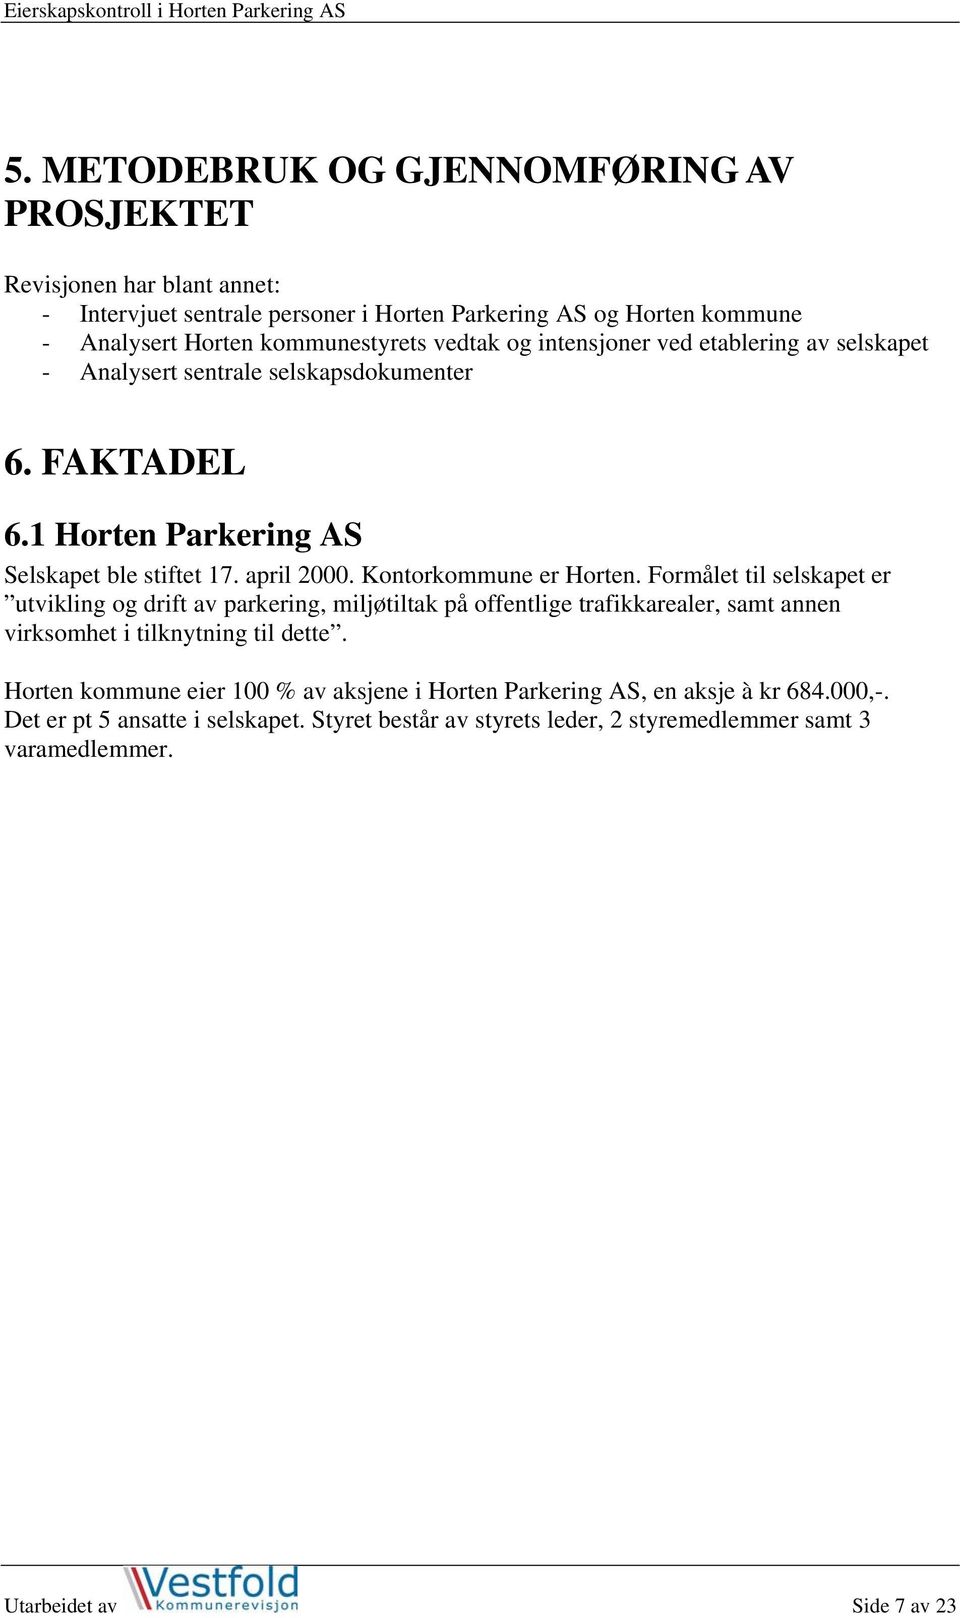 Kontorkommune er Horten. Formålet til selskapet er utvikling og drift av parkering, miljøtiltak på offentlige trafikkarealer, samt annen virksomhet i tilknytning til dette.